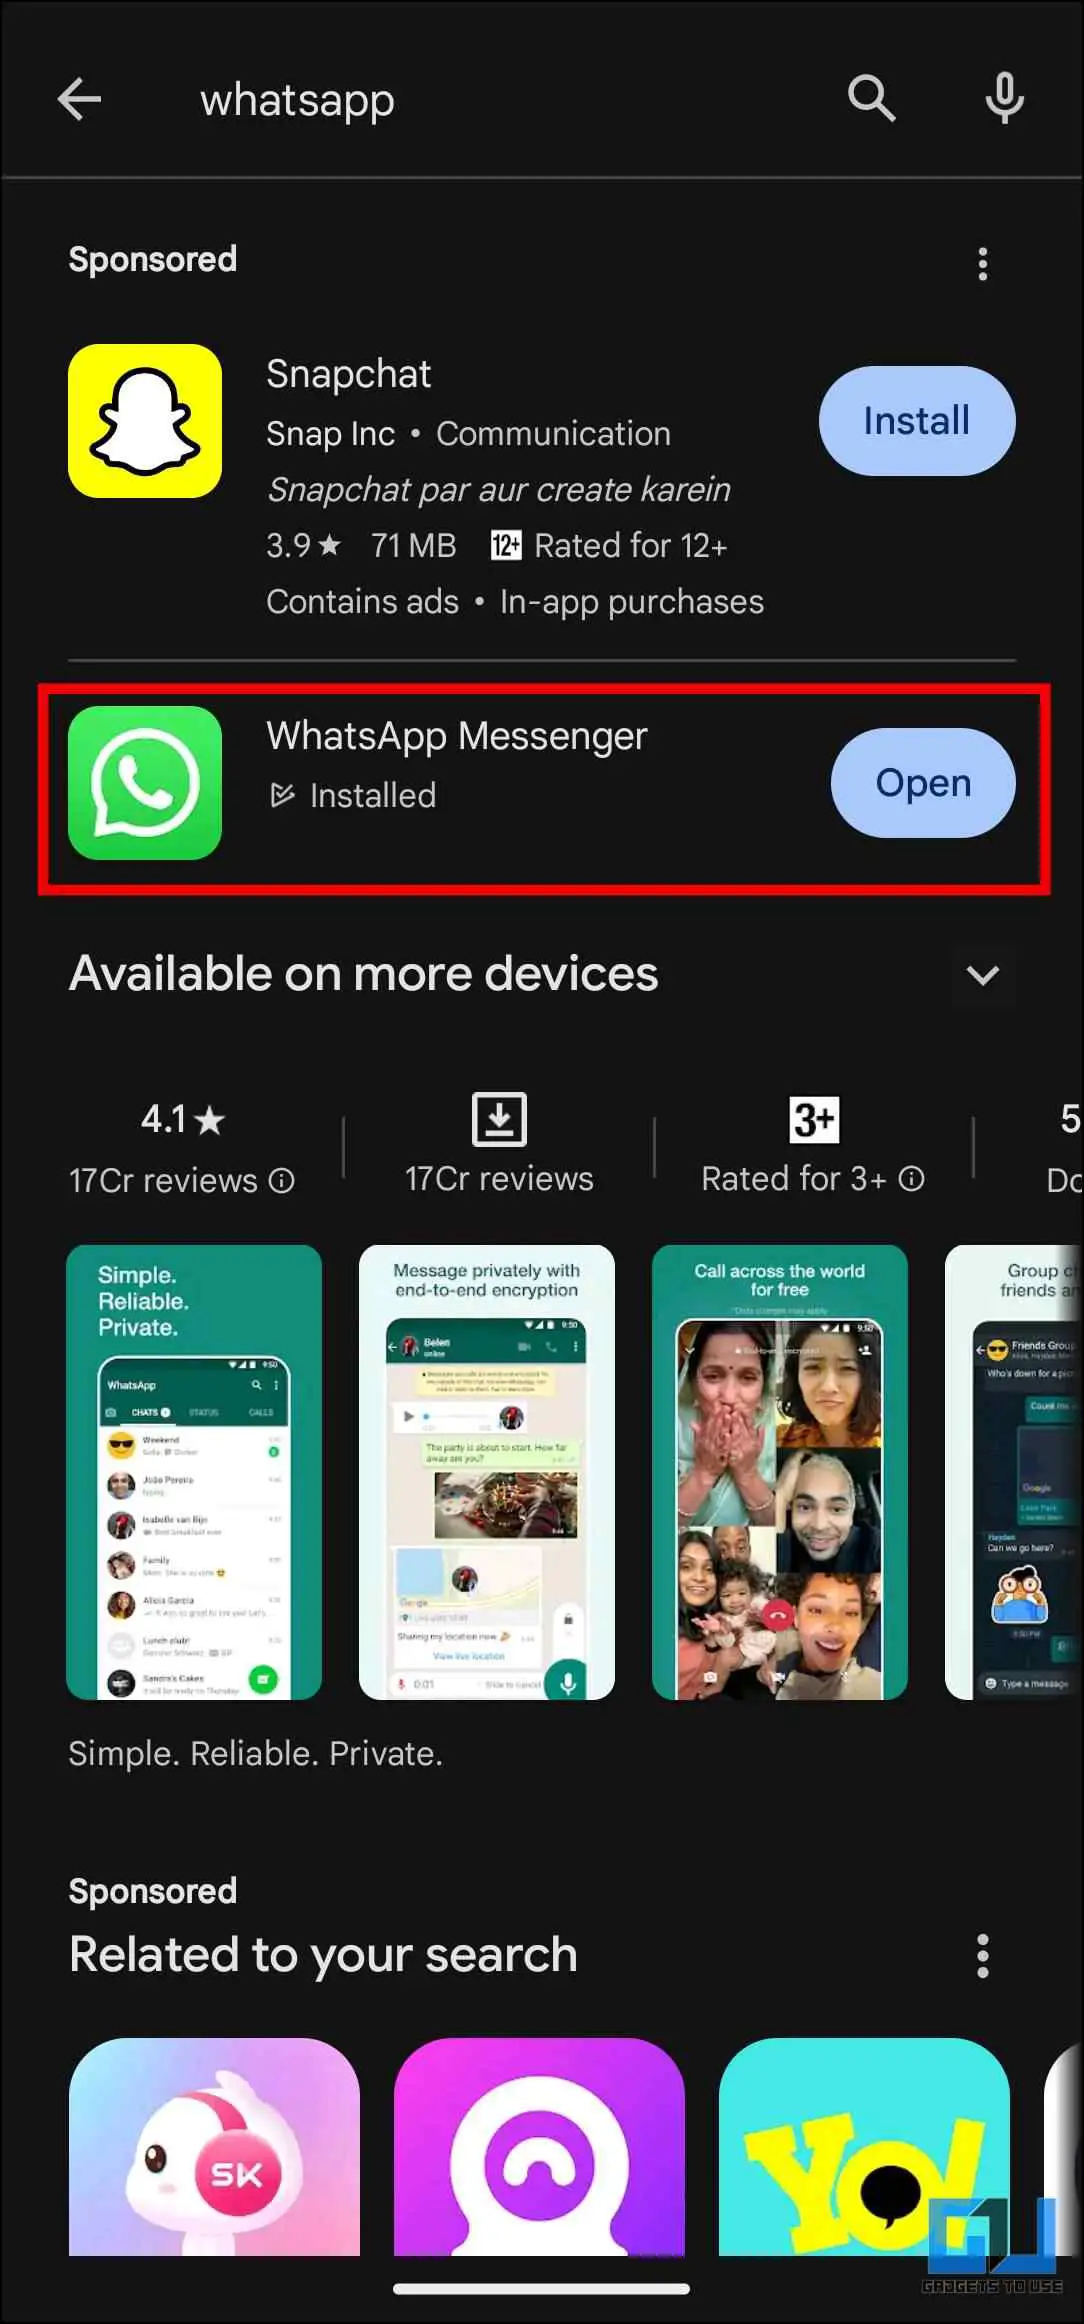 WhatsApp 메신저 앱 페이지로 이동합니다.